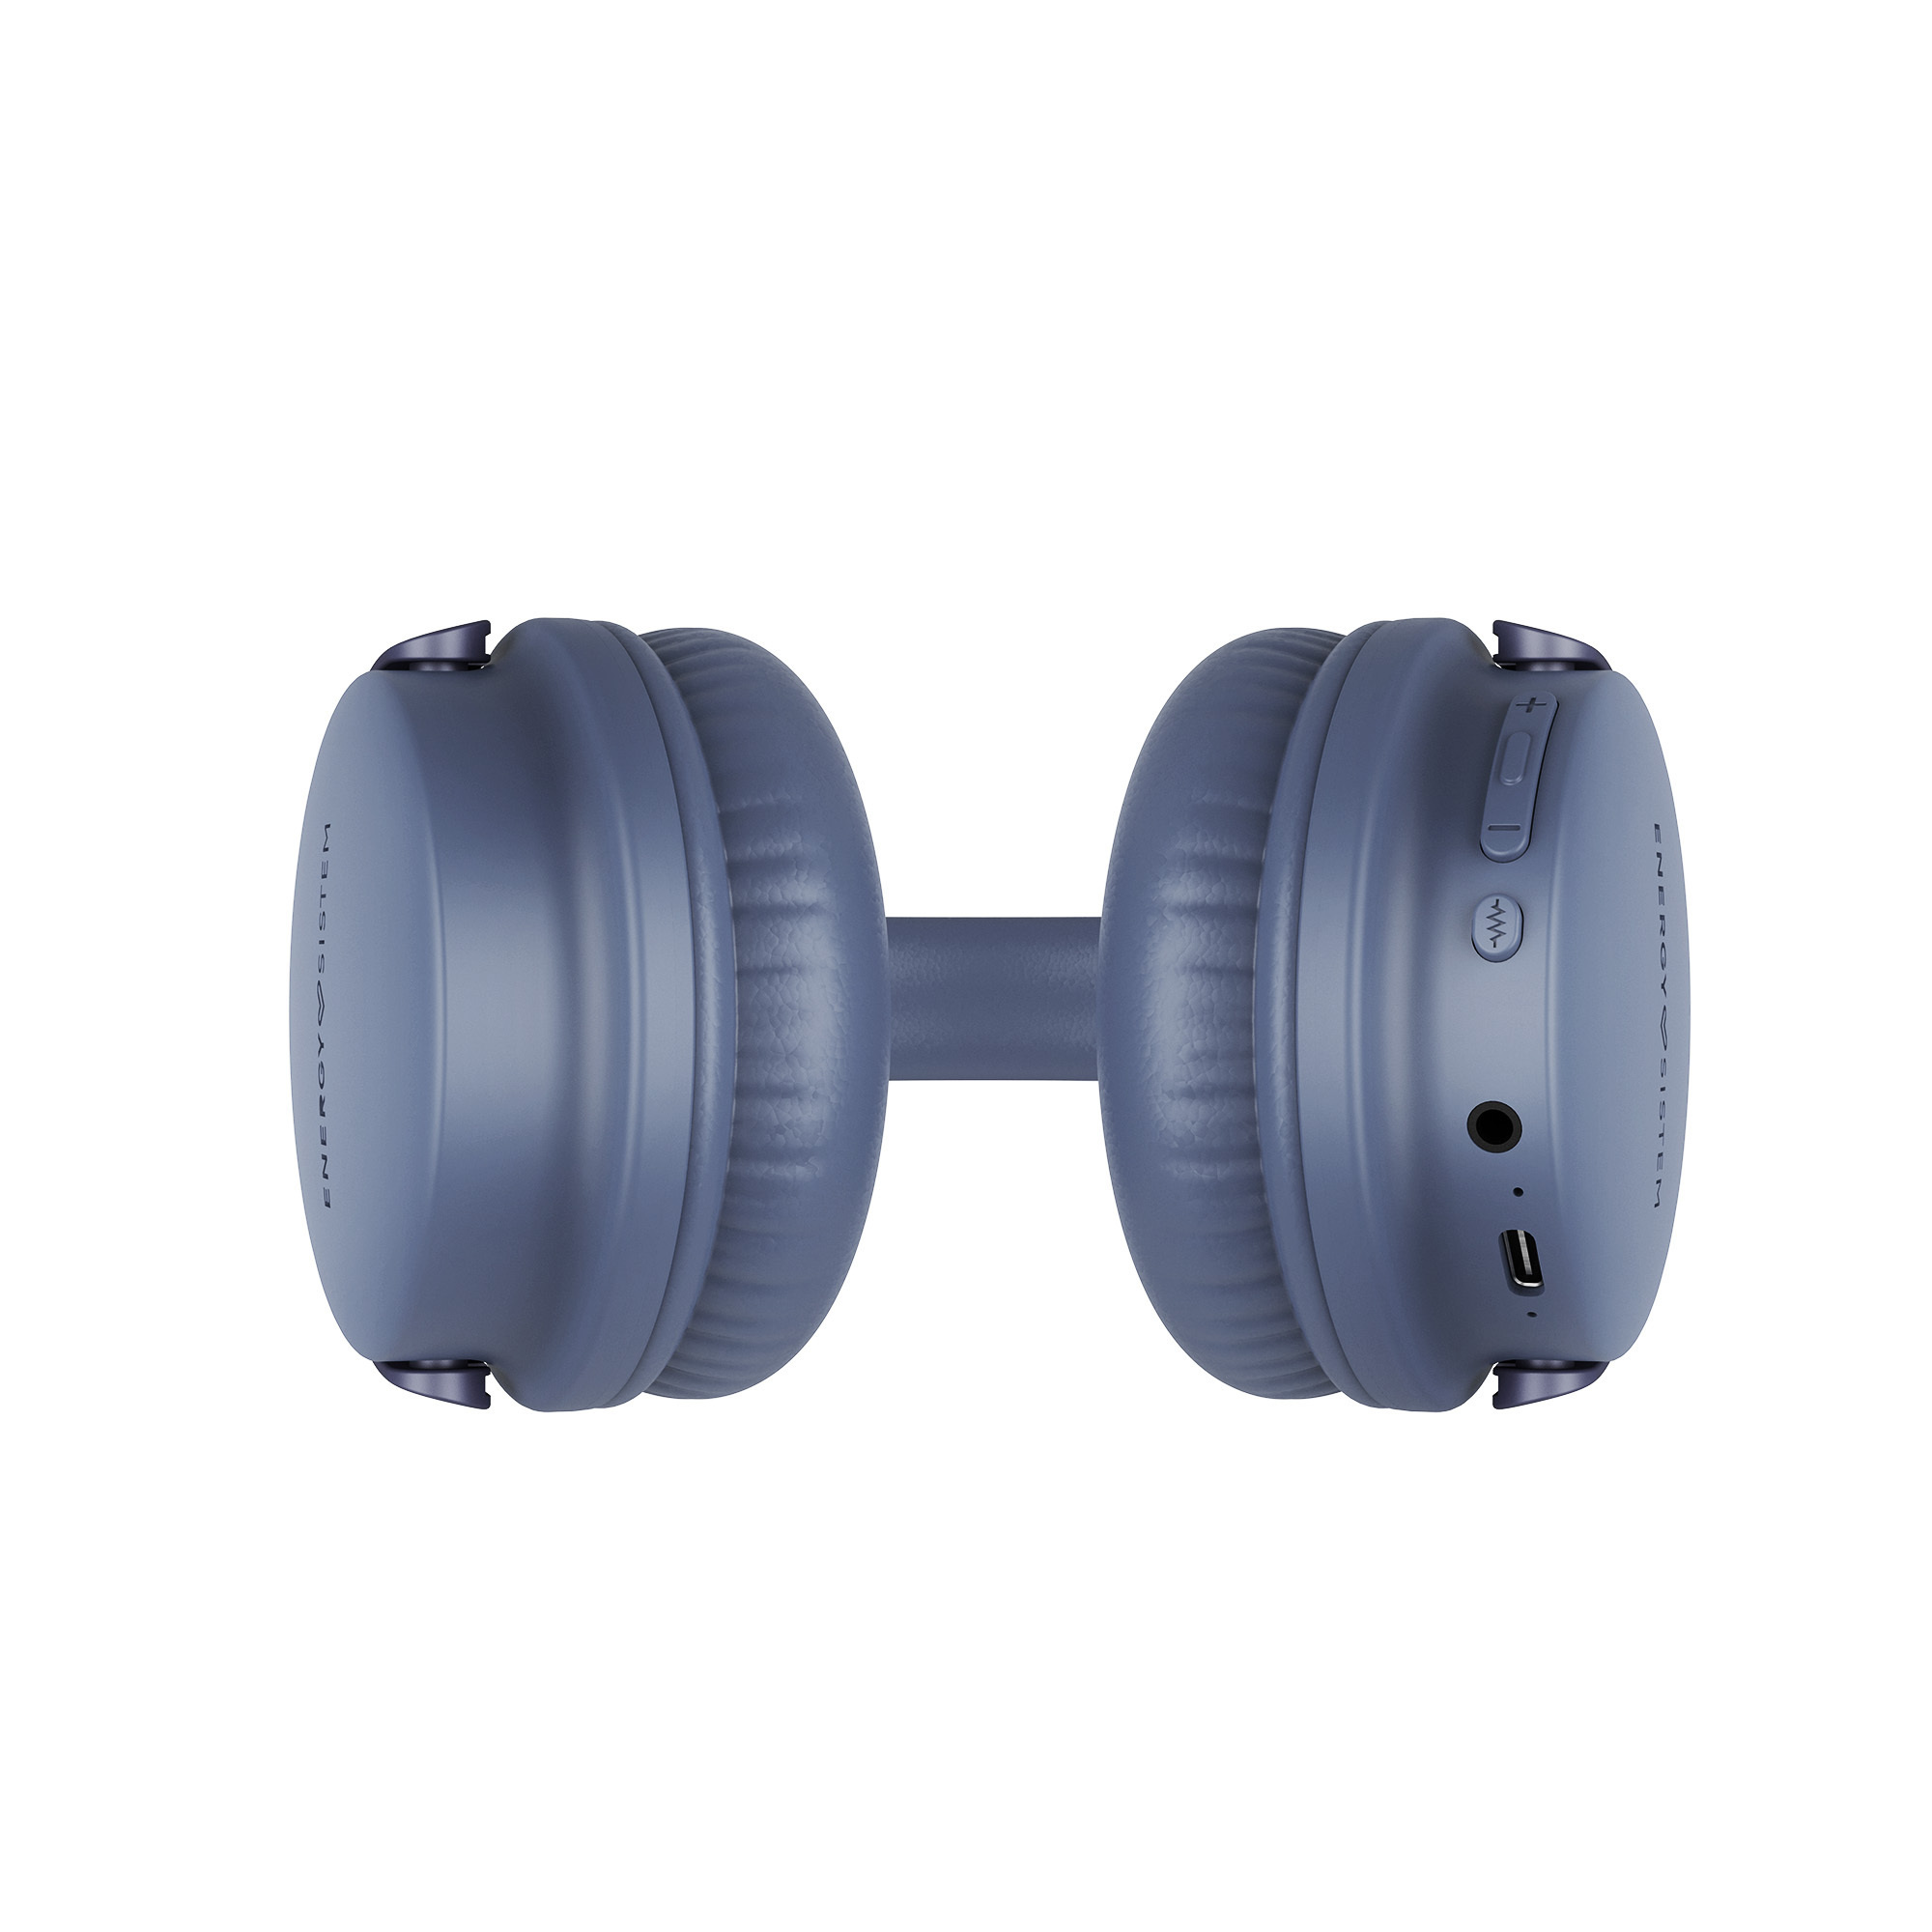 Kabellose Kopfhörer für High-Quality Voice Calls